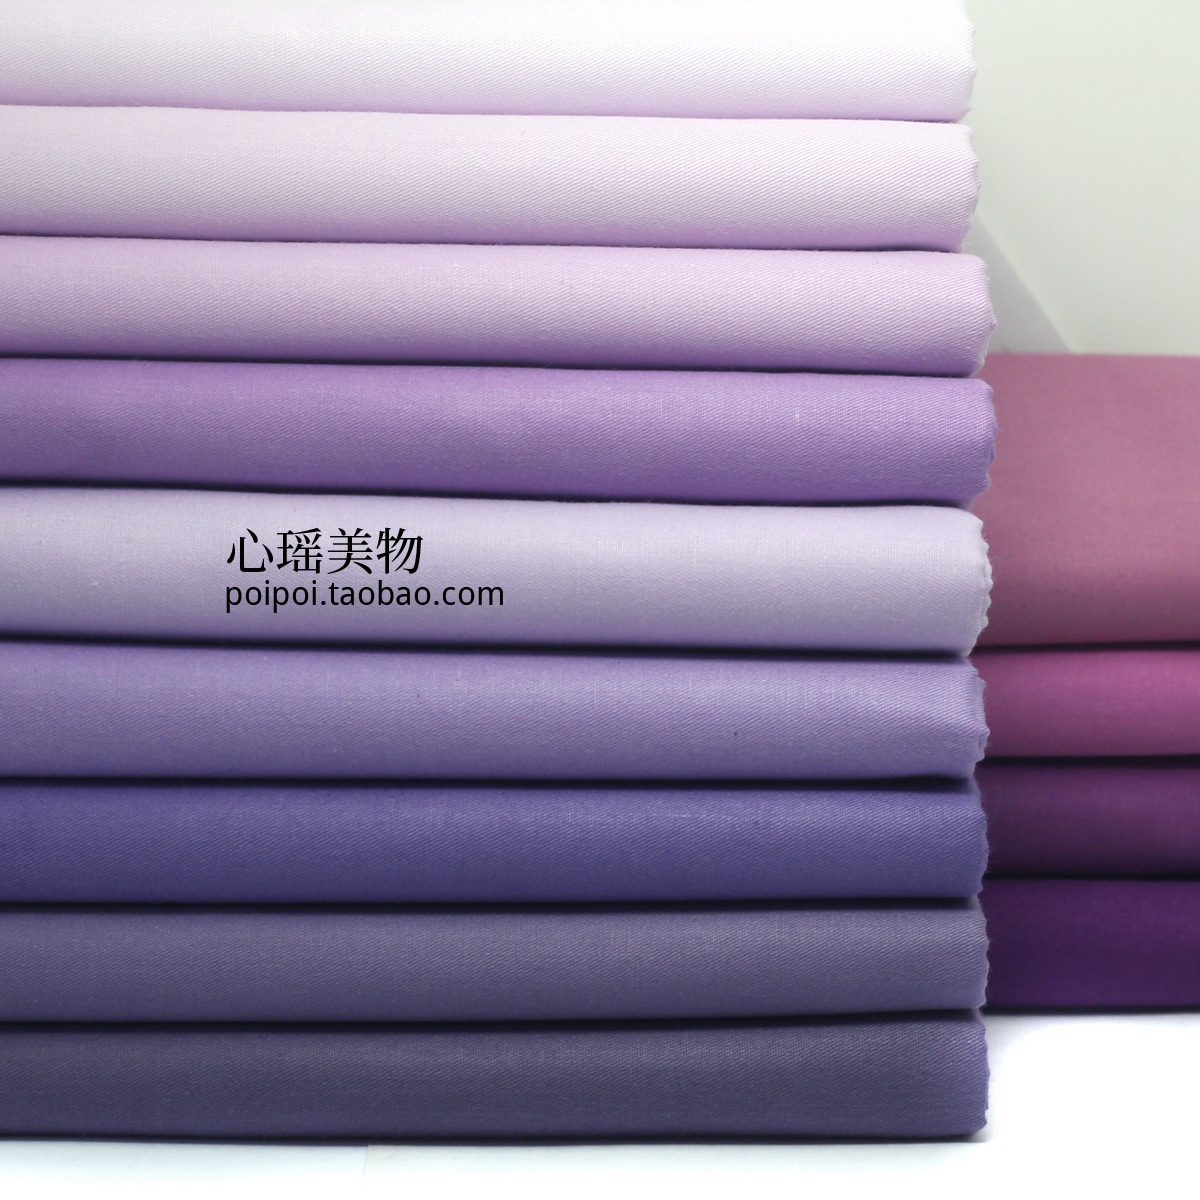 紫色系布组 优质紫罗兰斜纹床品面料 全棉衬衫布料 半米包邮 K28 Изображение 1